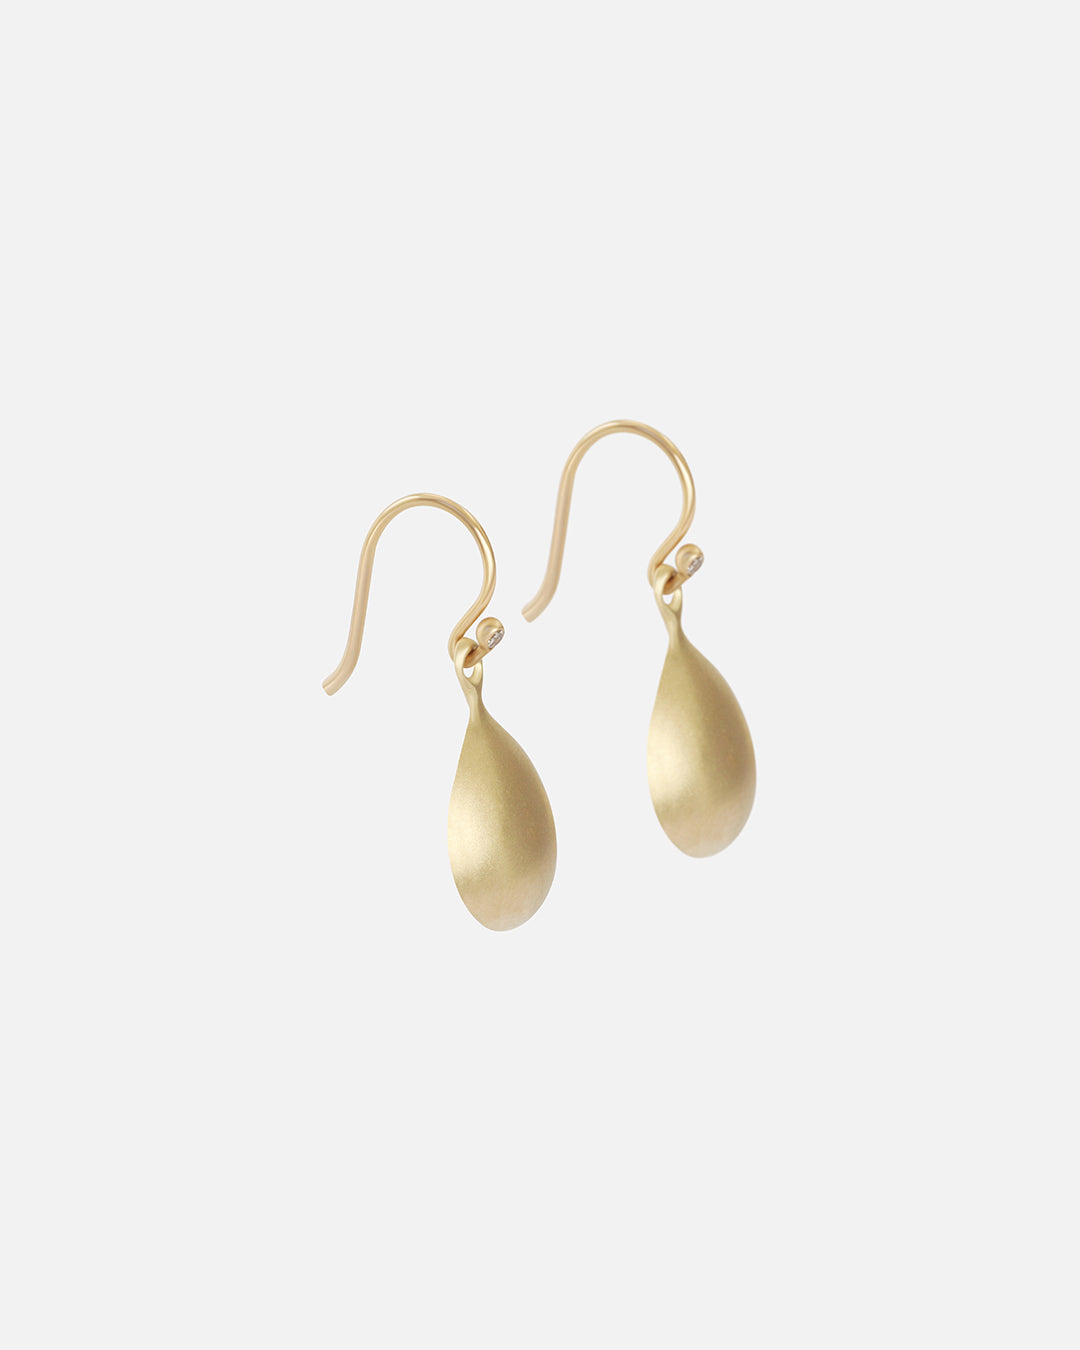 Teardrop & Diamond / Wire Earrings By Tricia Kirkland in earrings Category